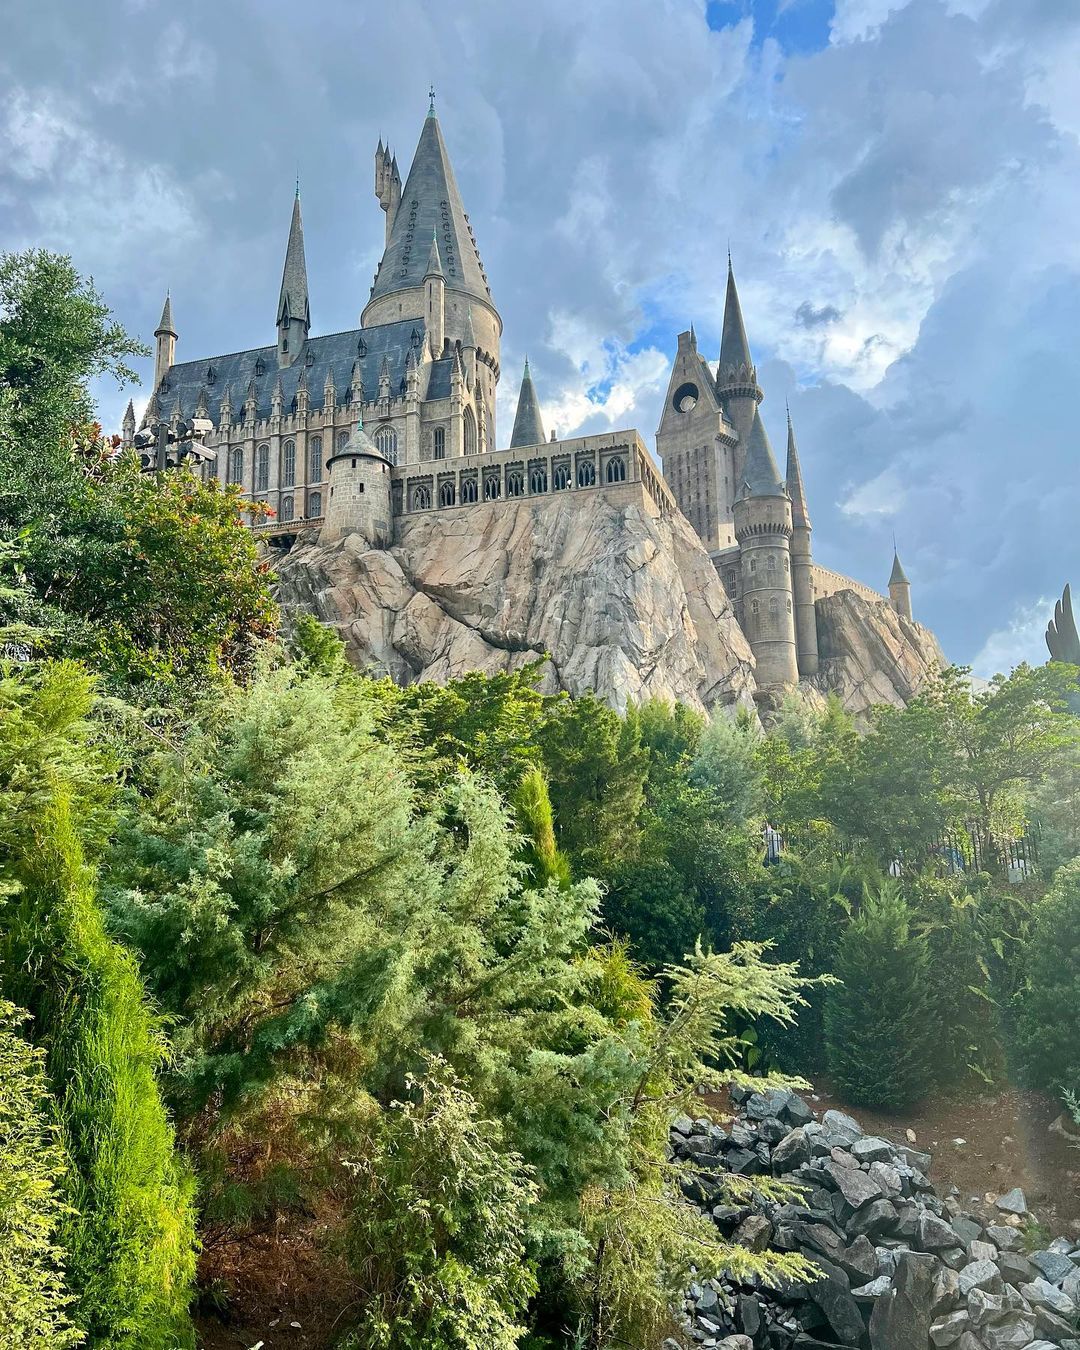 Hogwarts Castle next to Hogsmeade